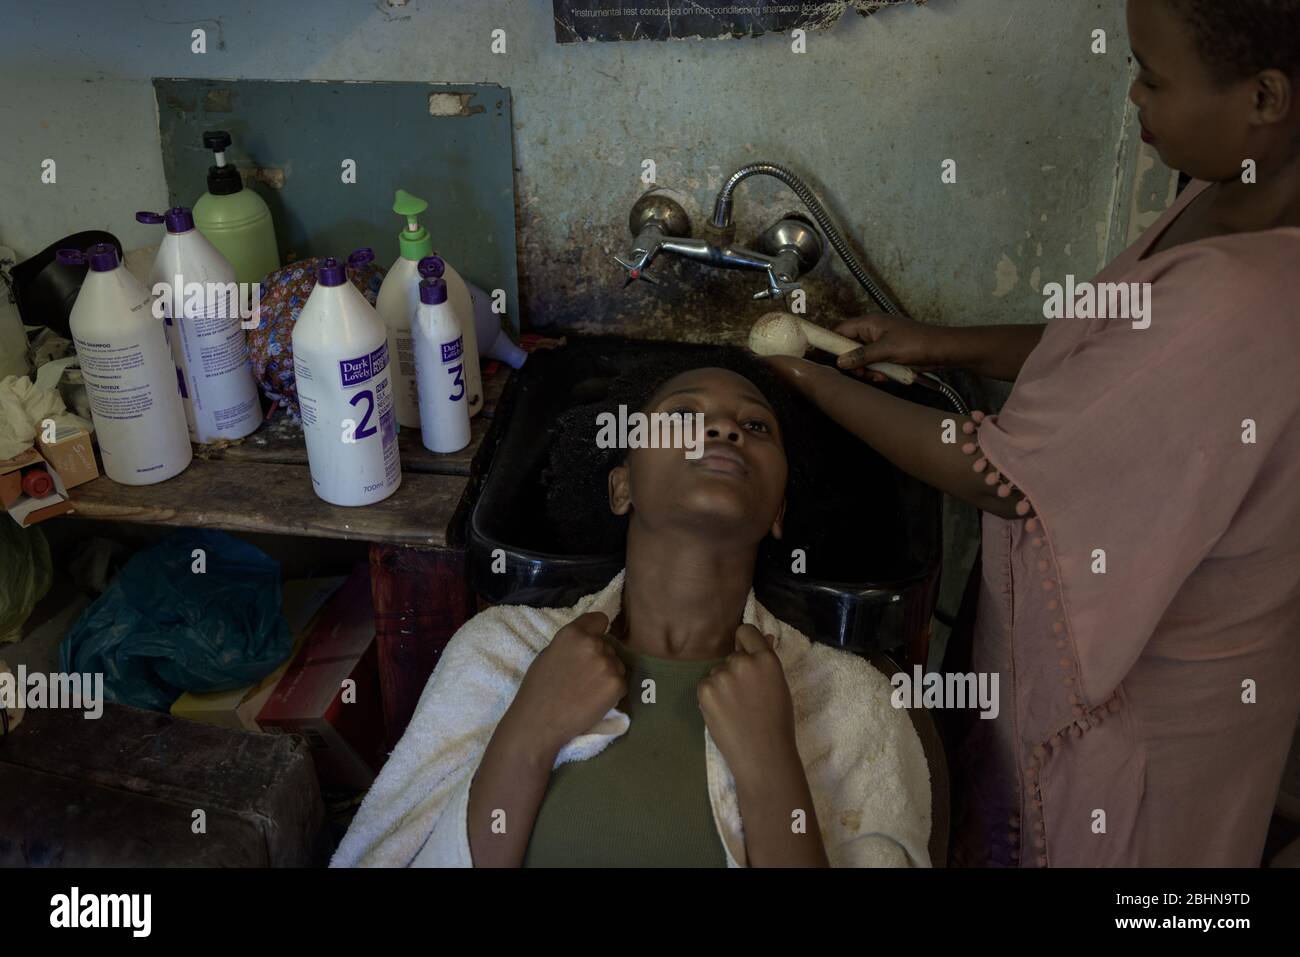 Un salon de coiffure Imizamo Yethu près de Hout Bay lors du verrouillage du coronavirus en Afrique du Sud est témoin d'une forte baisse des clients Banque D'Images